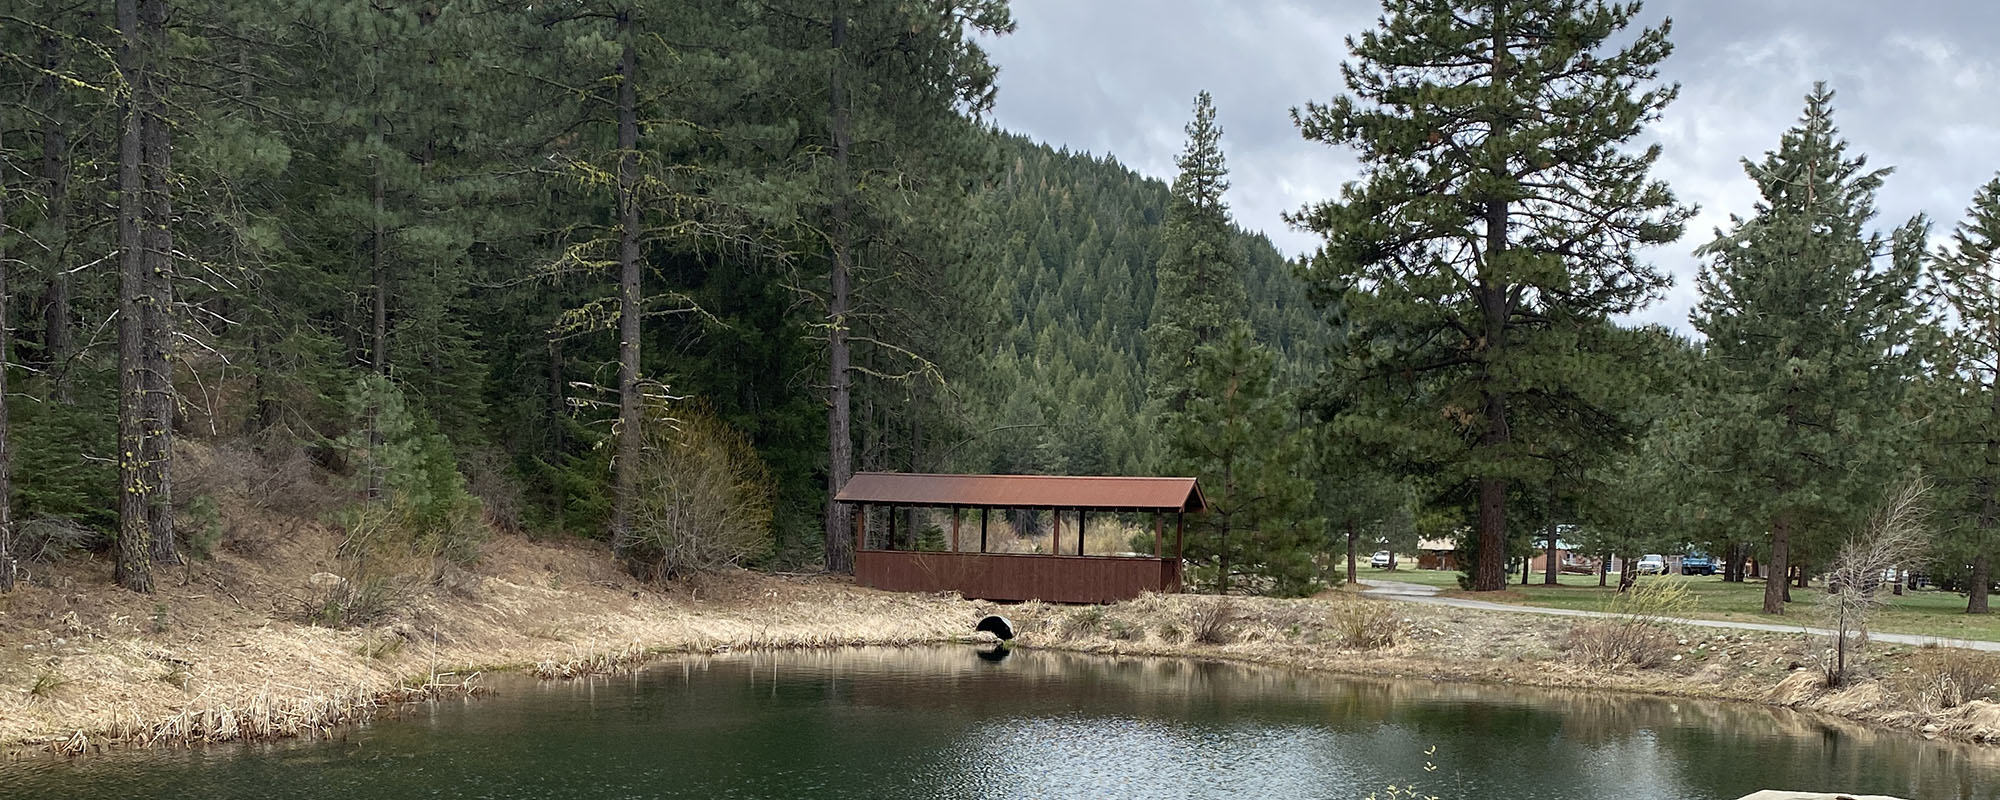 The Lost Sierra Ranch